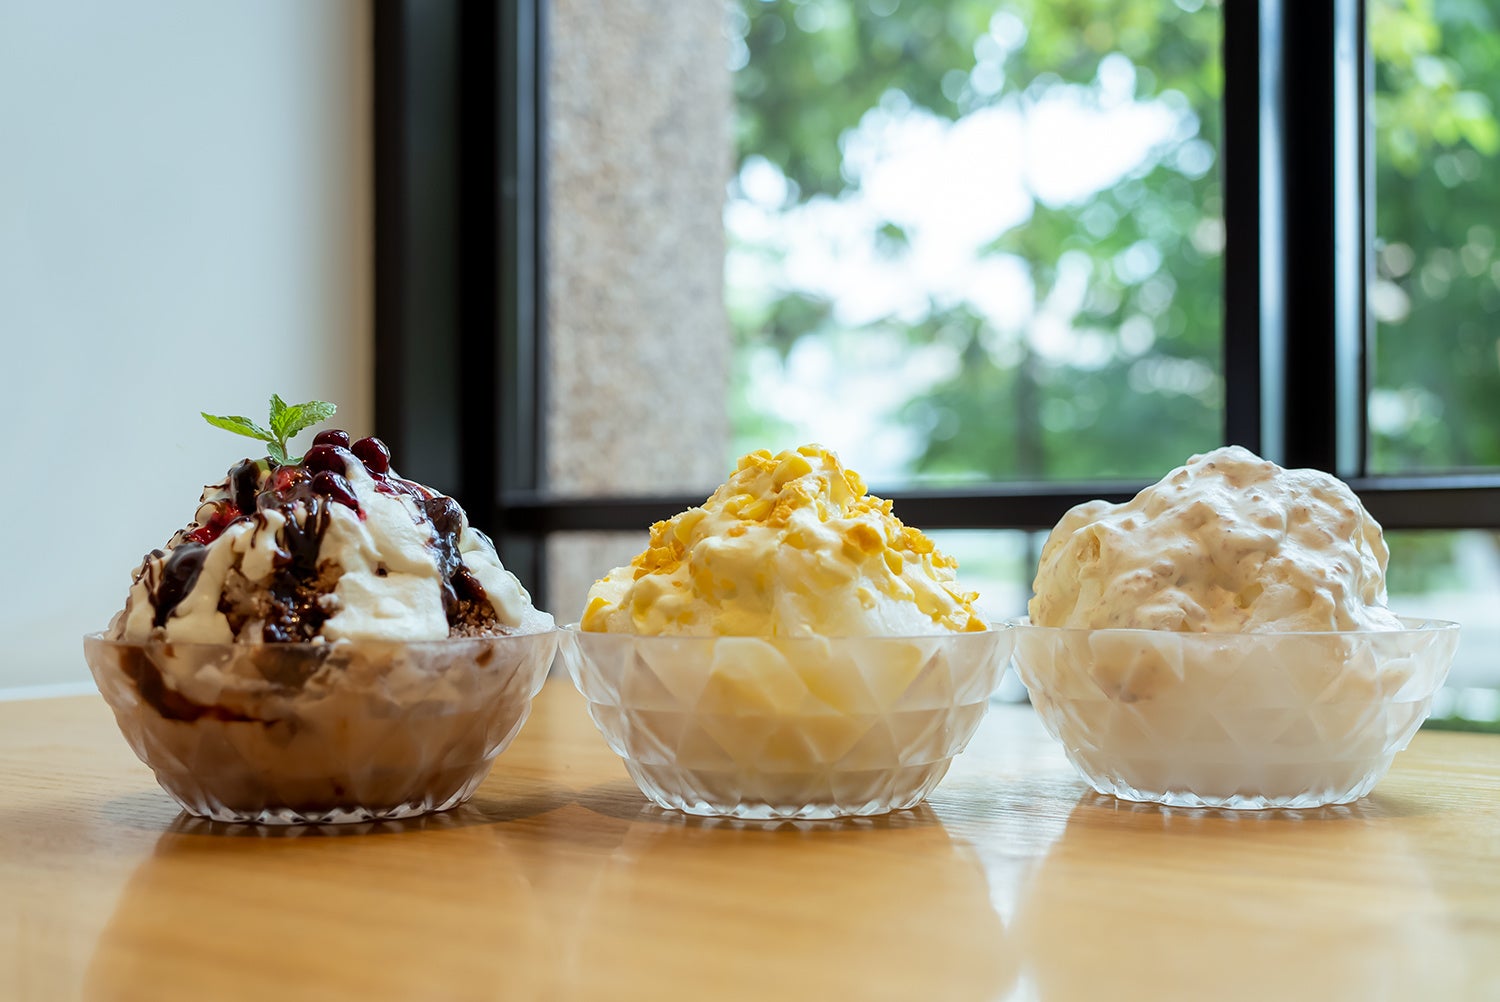 「ベーコンポテトかき氷」他10種の「無添加かき氷」を発売@haishop cafeのサブ画像1